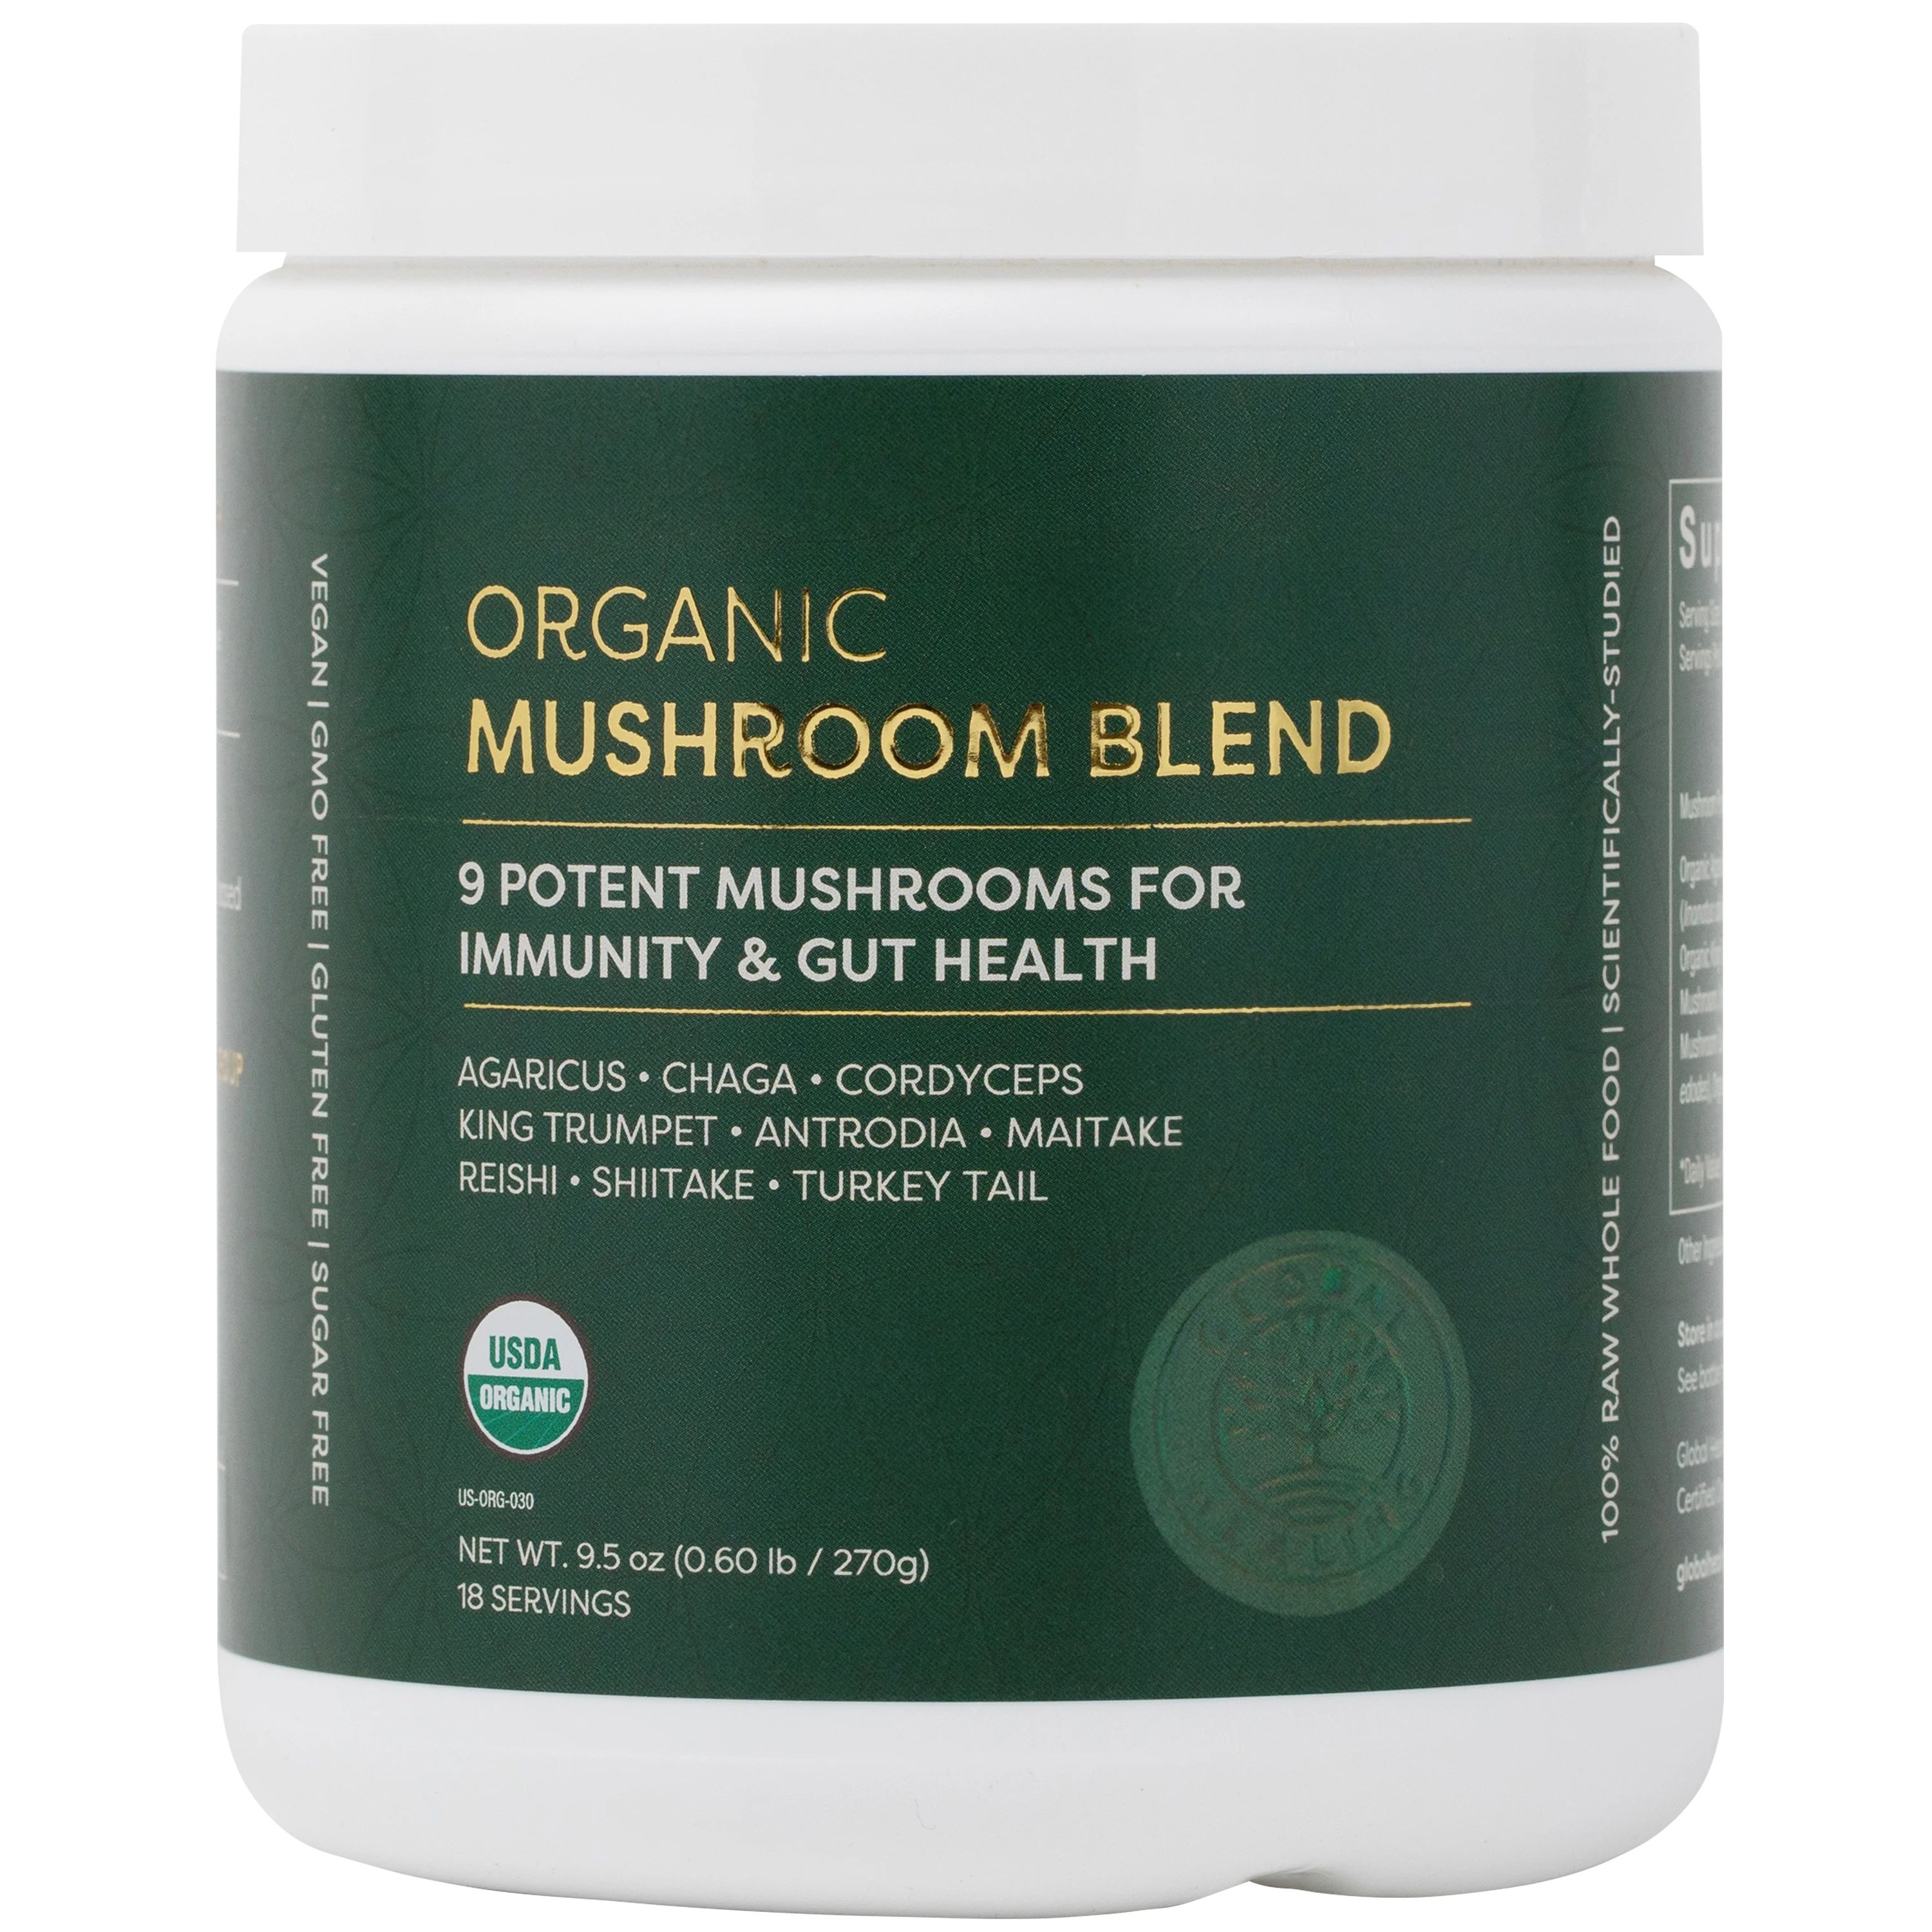 Organic Mushroom Blend Powder Supplement - Global Healing | Global Healing Center